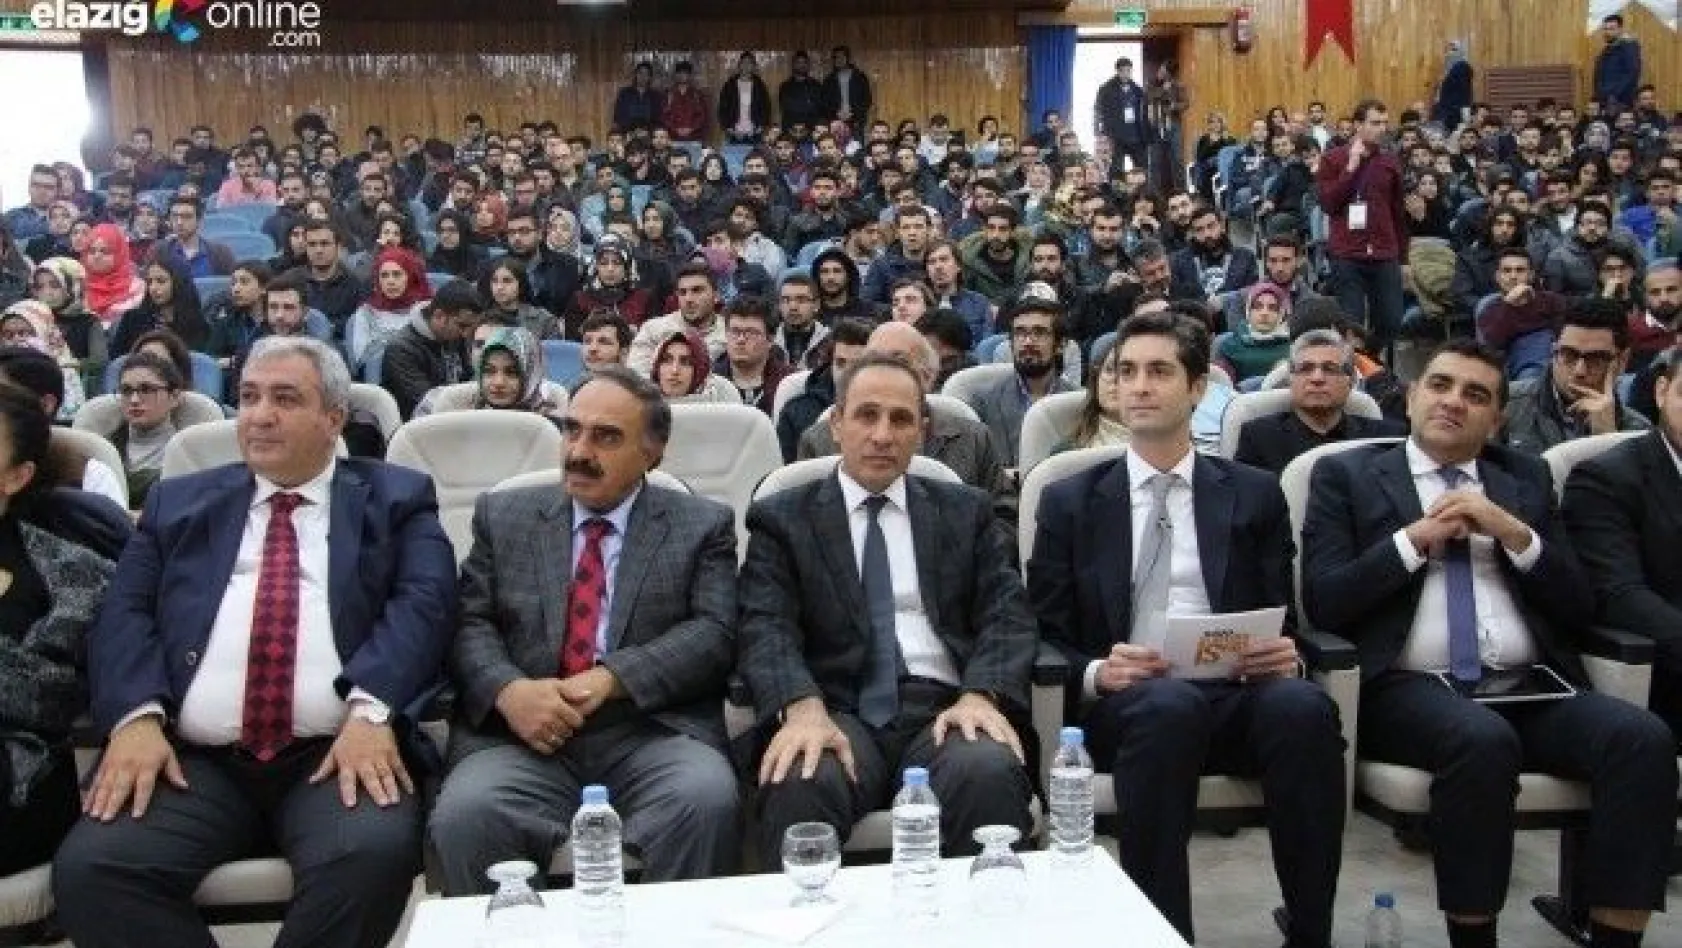 Elazığ'da girişimcilik paneli düzenlendi